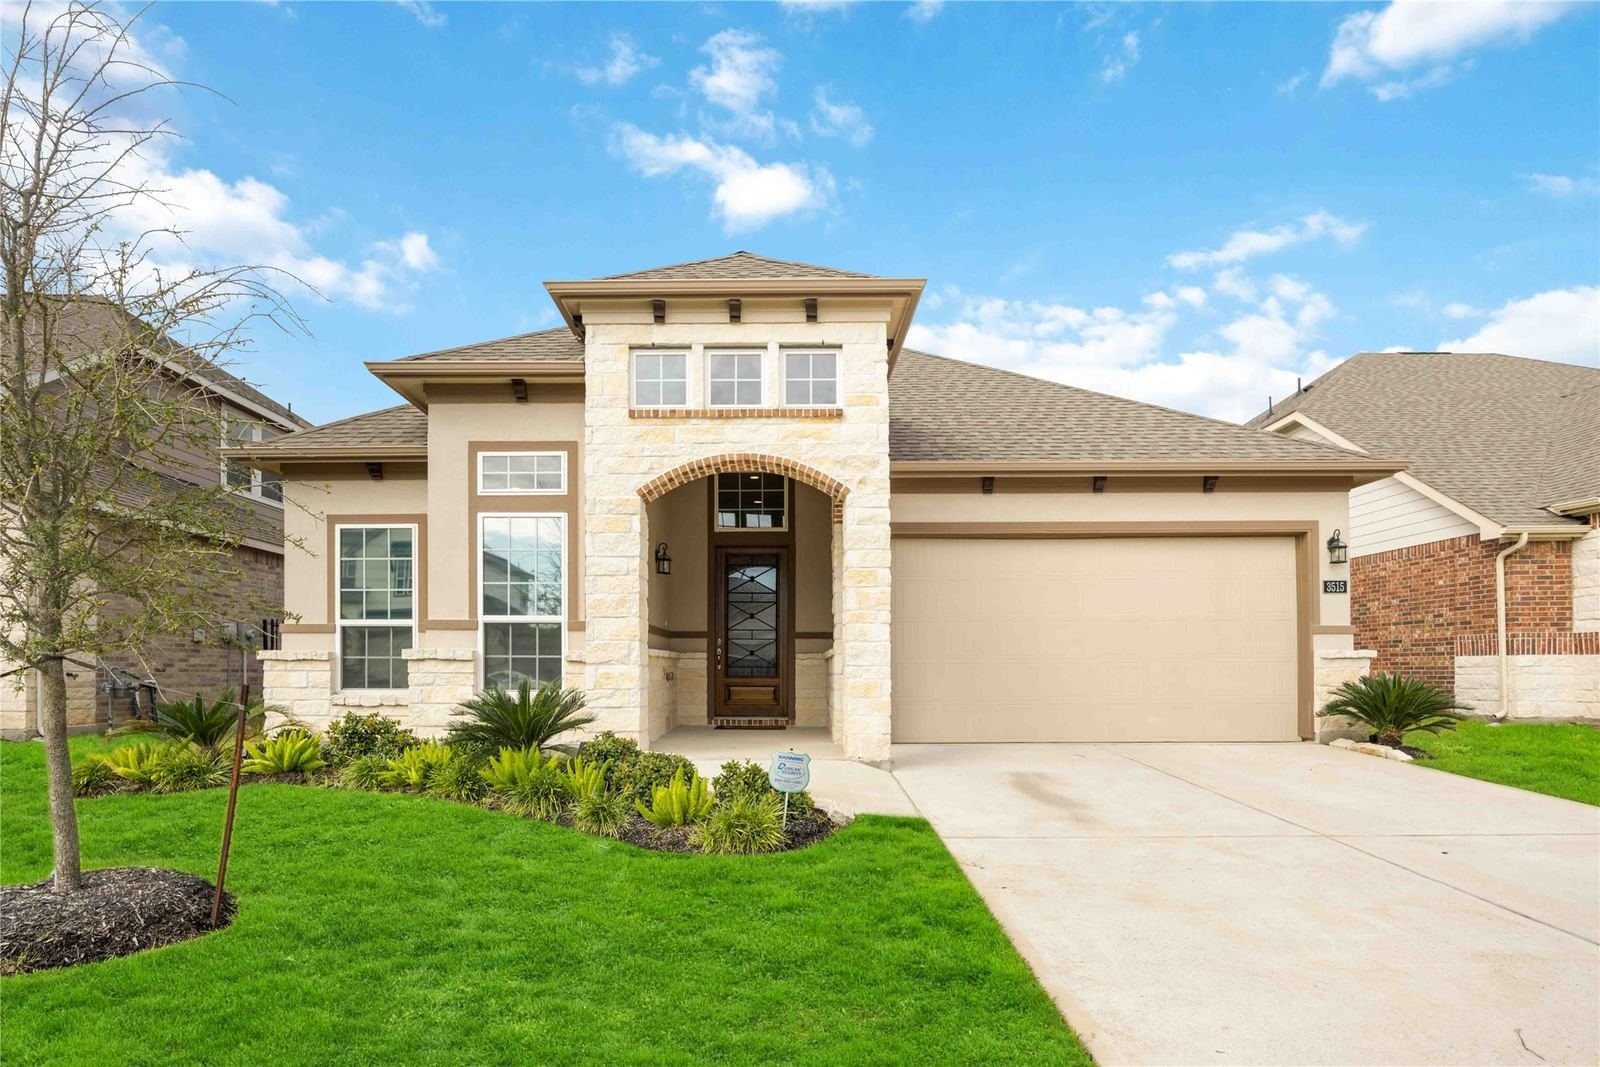 Real estate property located at 3515 Lake Varano, Harris, Katy, TX, US